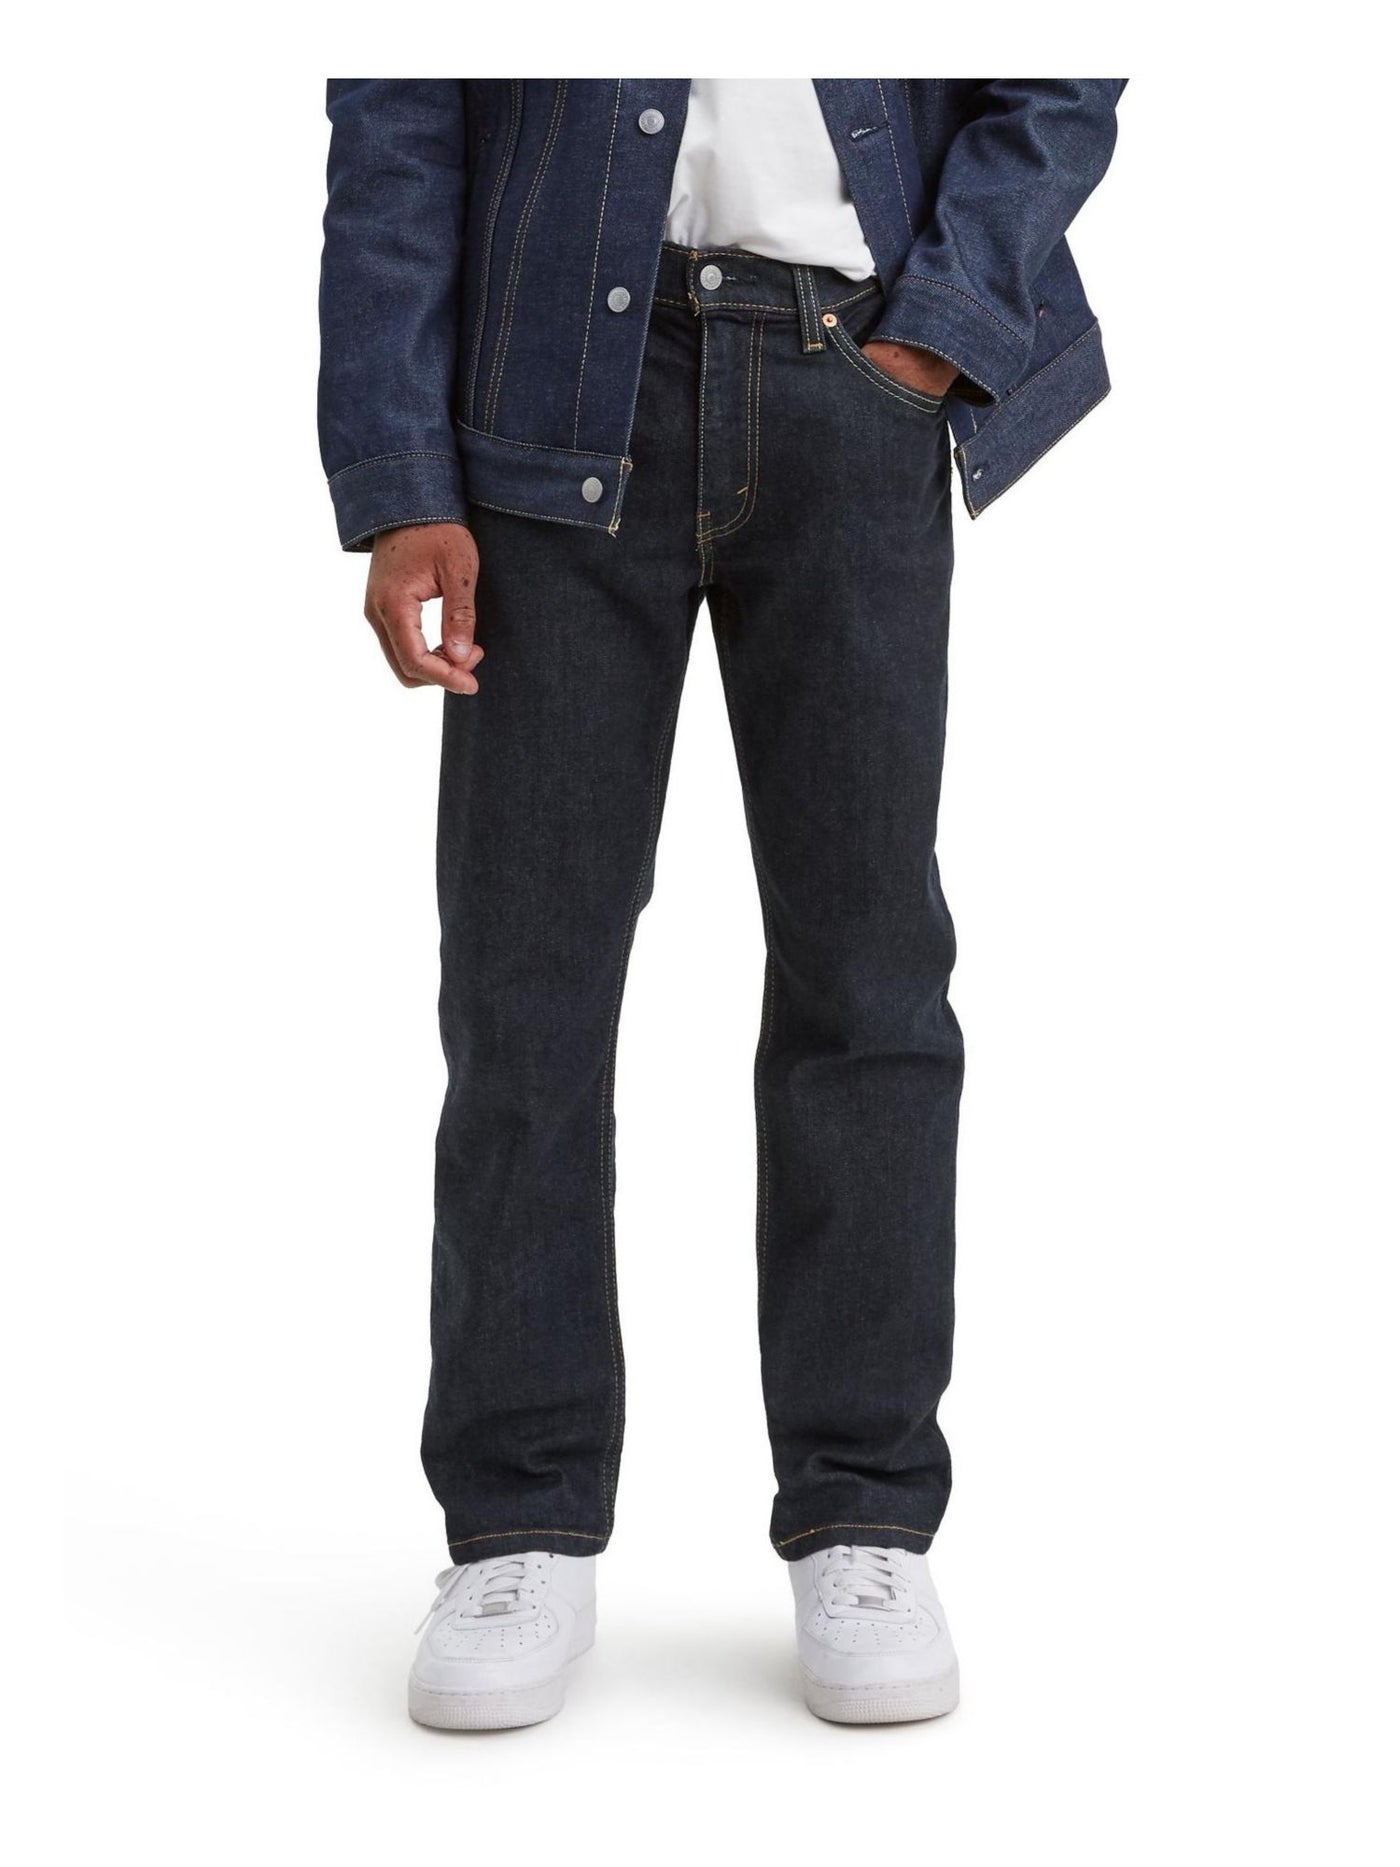 LEVI'S Mens Navy Flat Front, Athletic Fit Denim Jeans 30W/ 32L